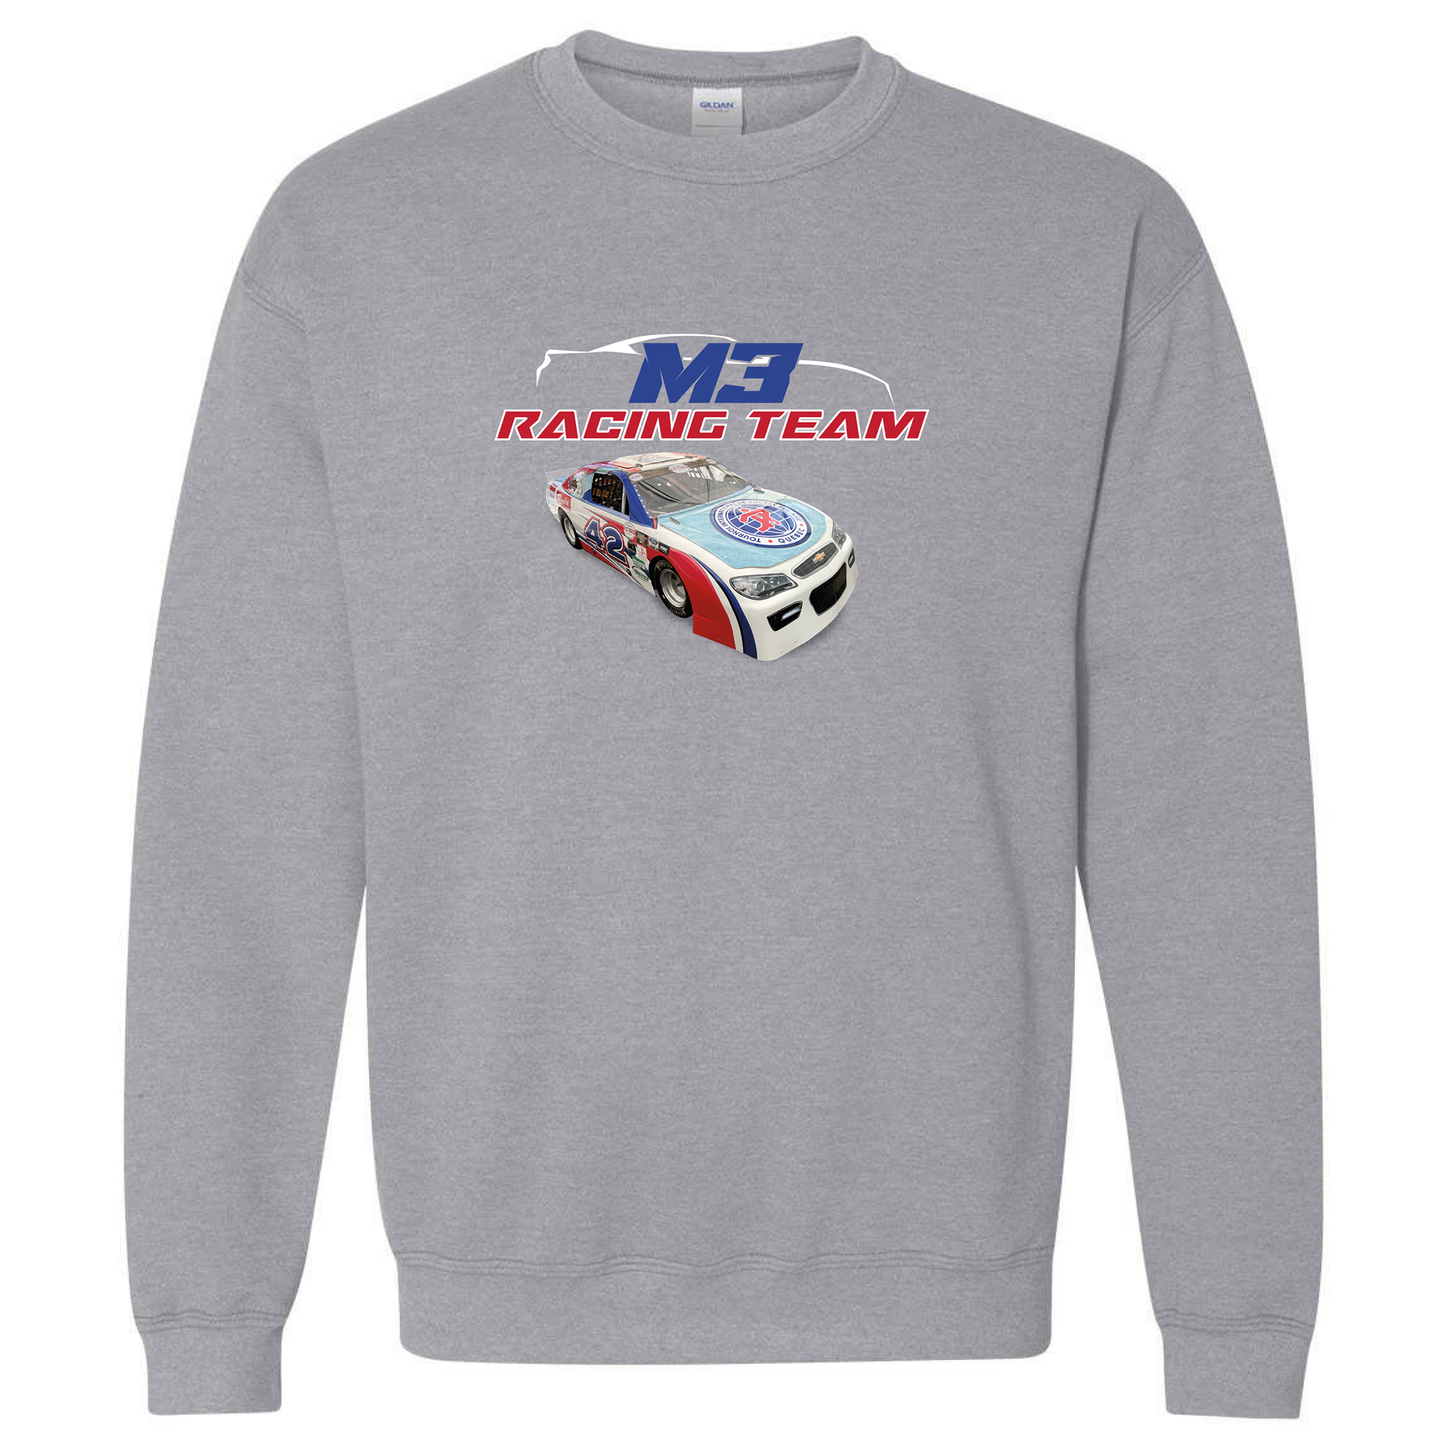 Chandail molleton gris moyen avec voiture de course style nascar et logo M3 Racing team blanc, rouge et bleu.